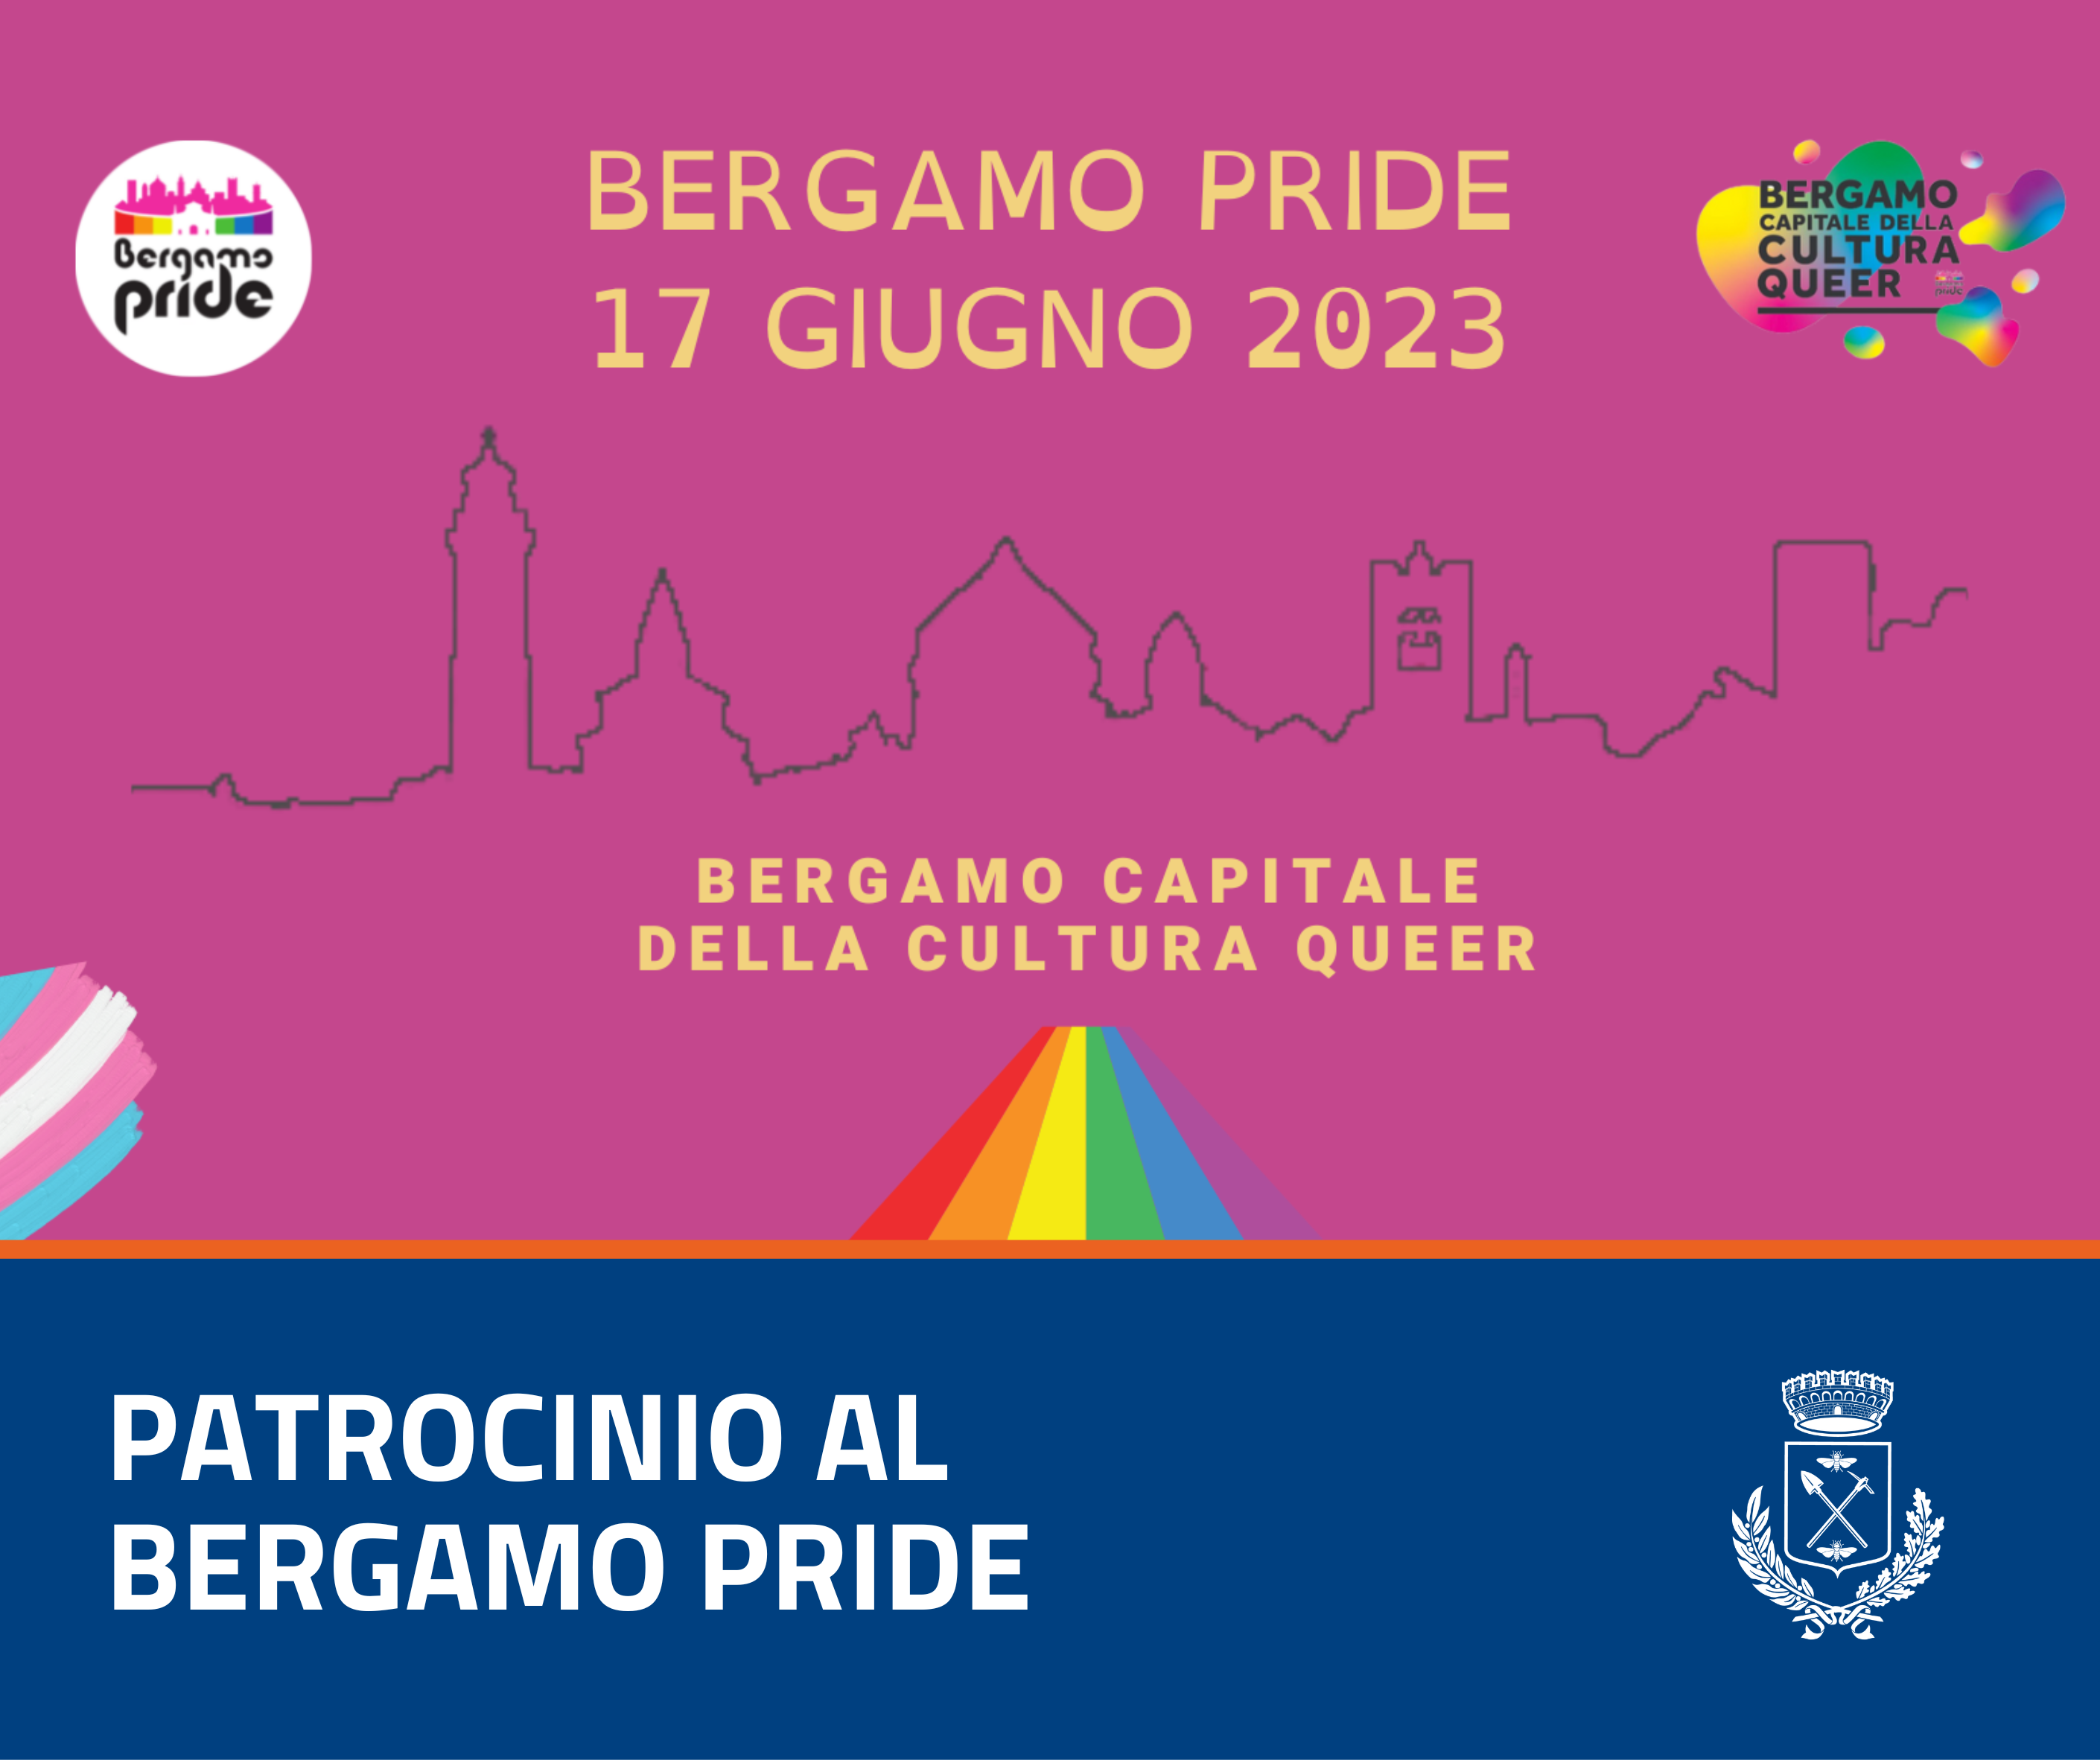 Immagine che raffigura Patrocinio al Bergamo Pride 2023